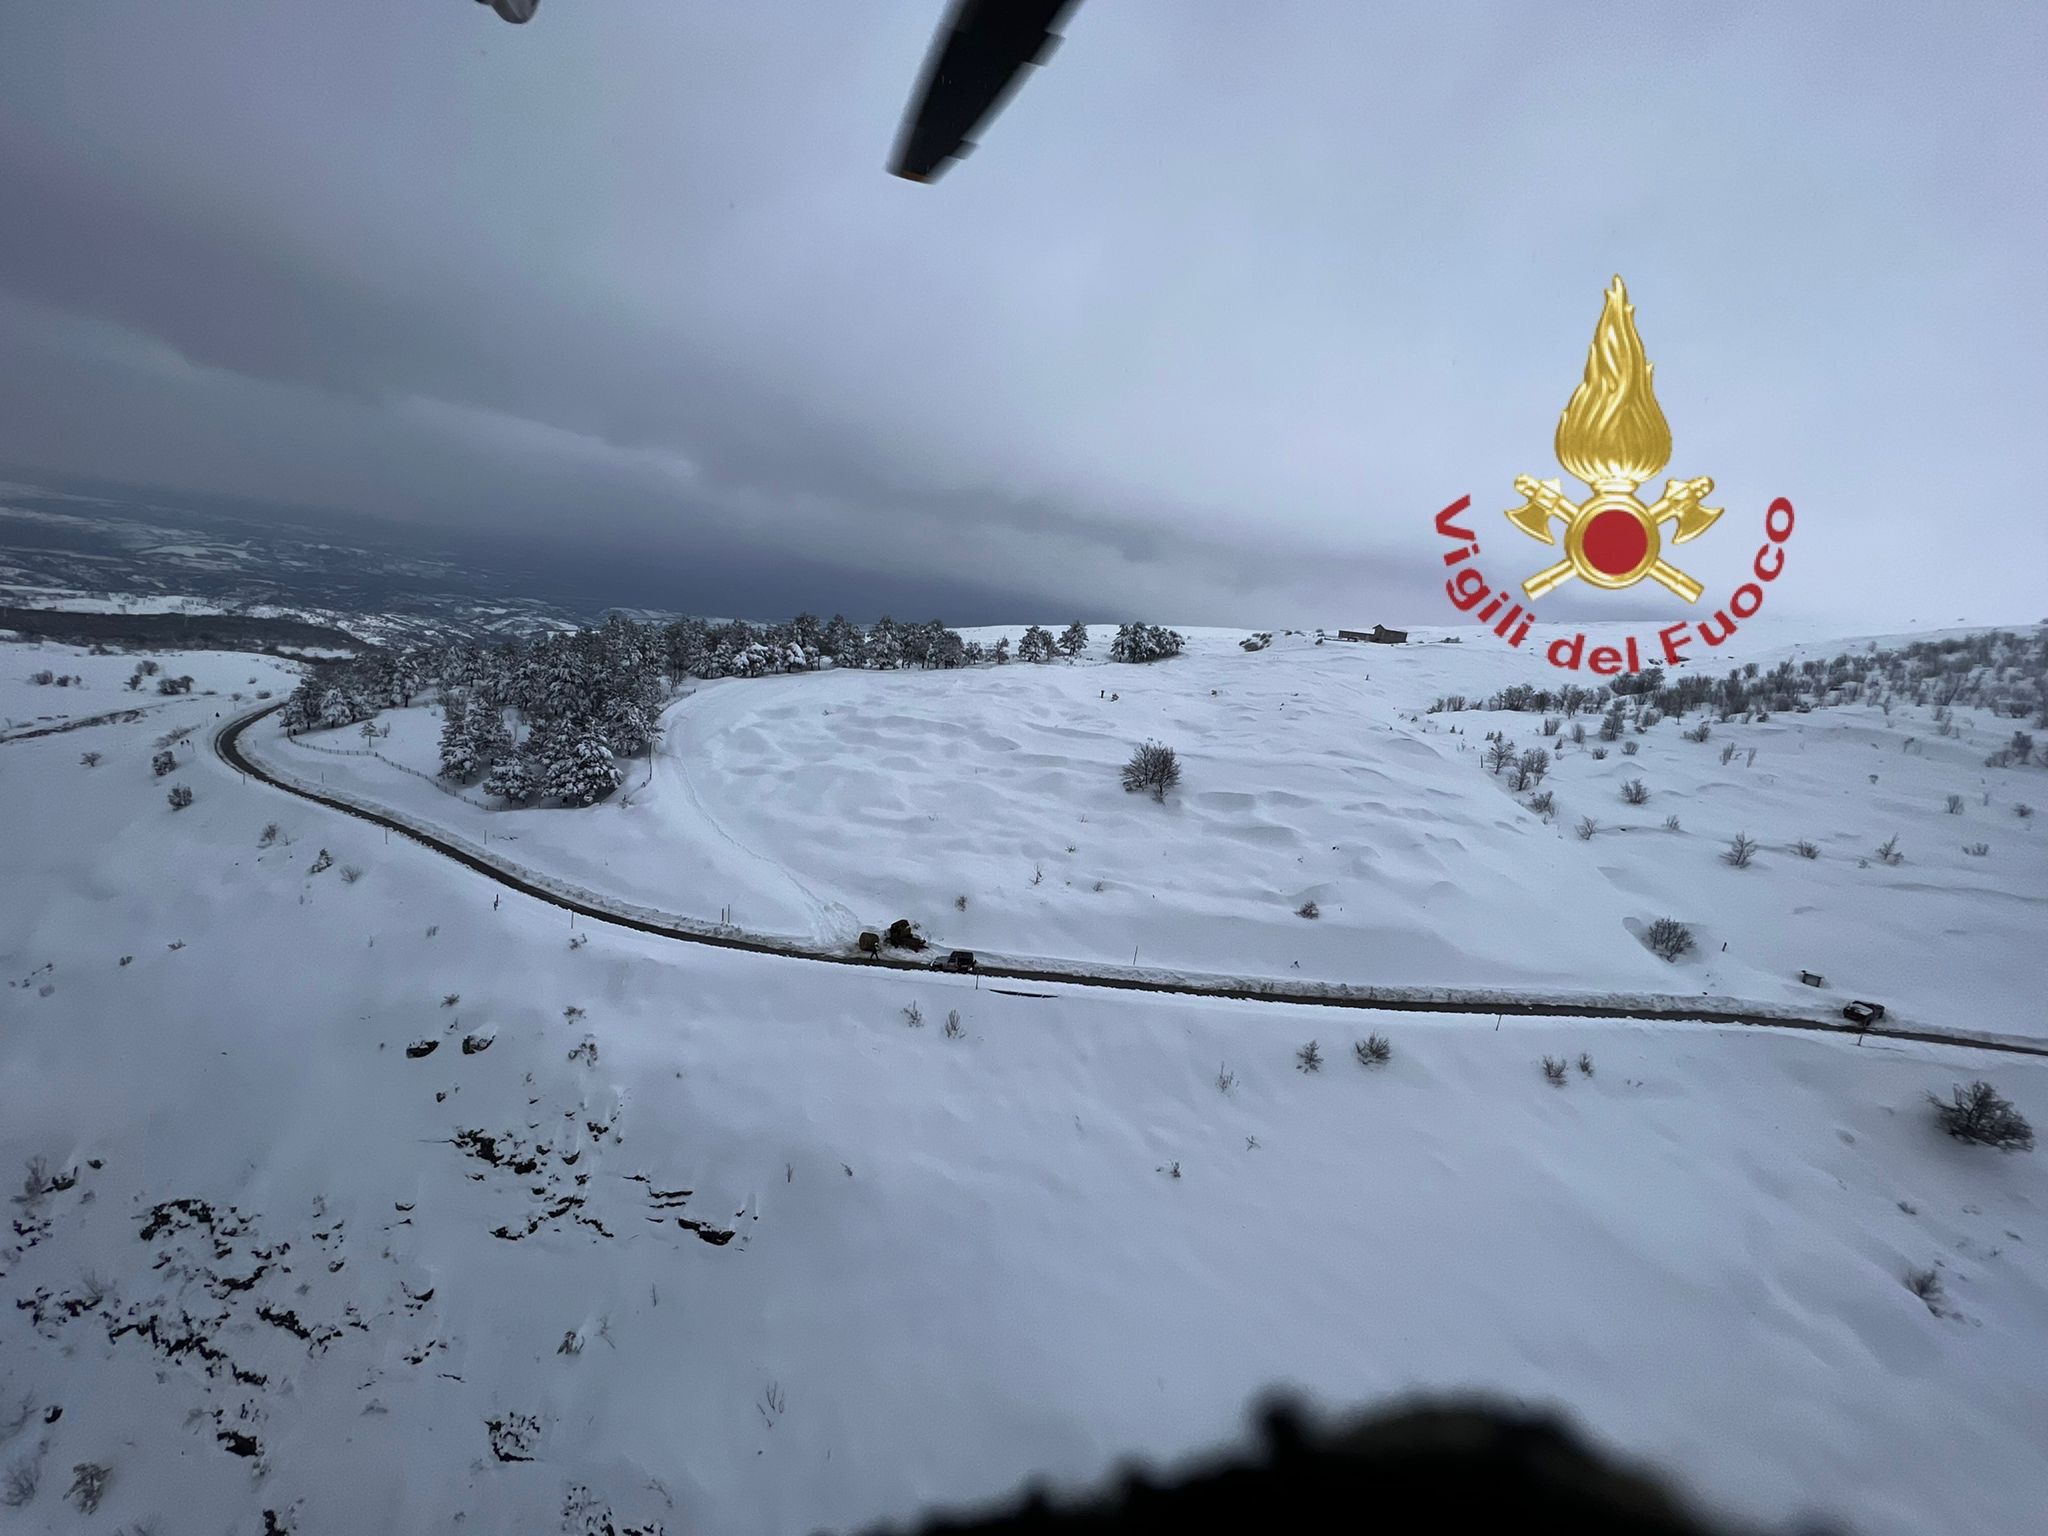 Lettomanoppello, bloccato nella neve: allevatore salvato con l'elicottero VIDEO-FOTO